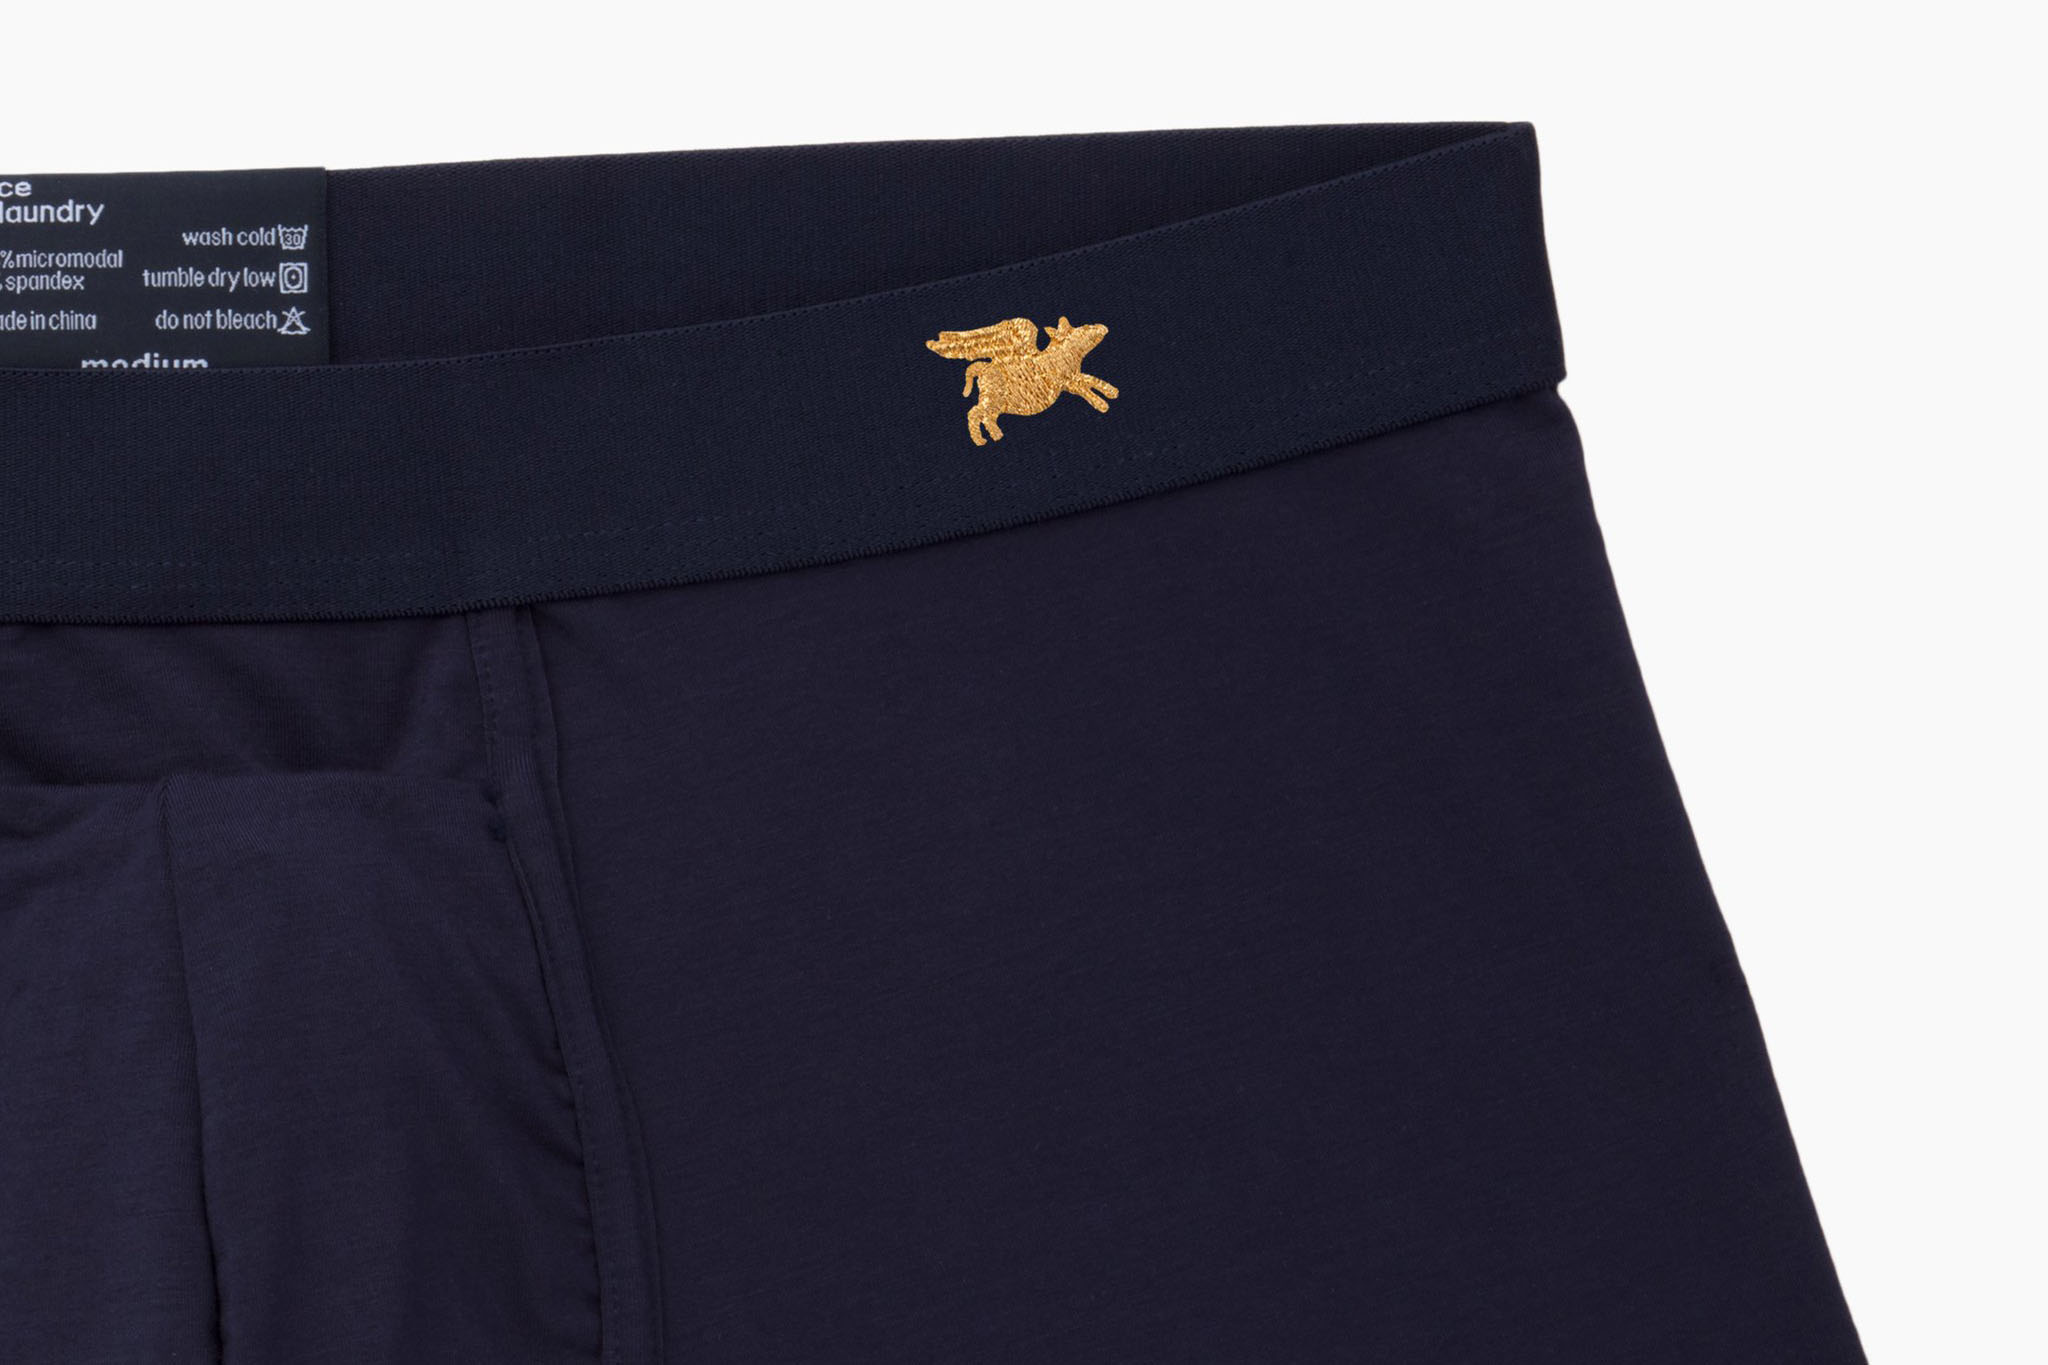 Underwear Review – Todd Sanfield Nocturnal Micro Brief – Underwear